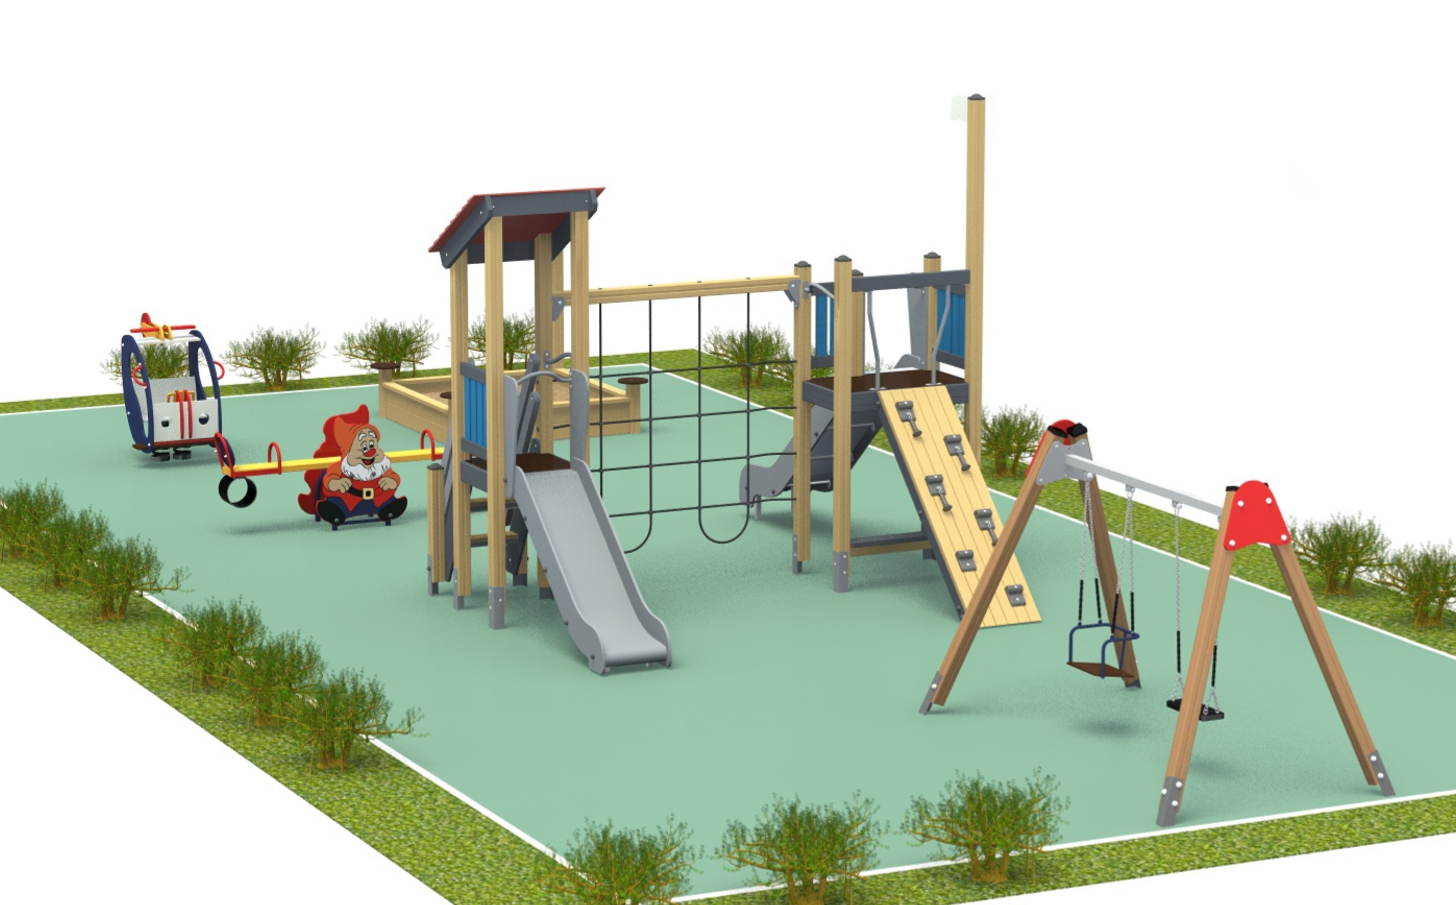 Дизайн-проект детской игровой площадки 19 х 10 м